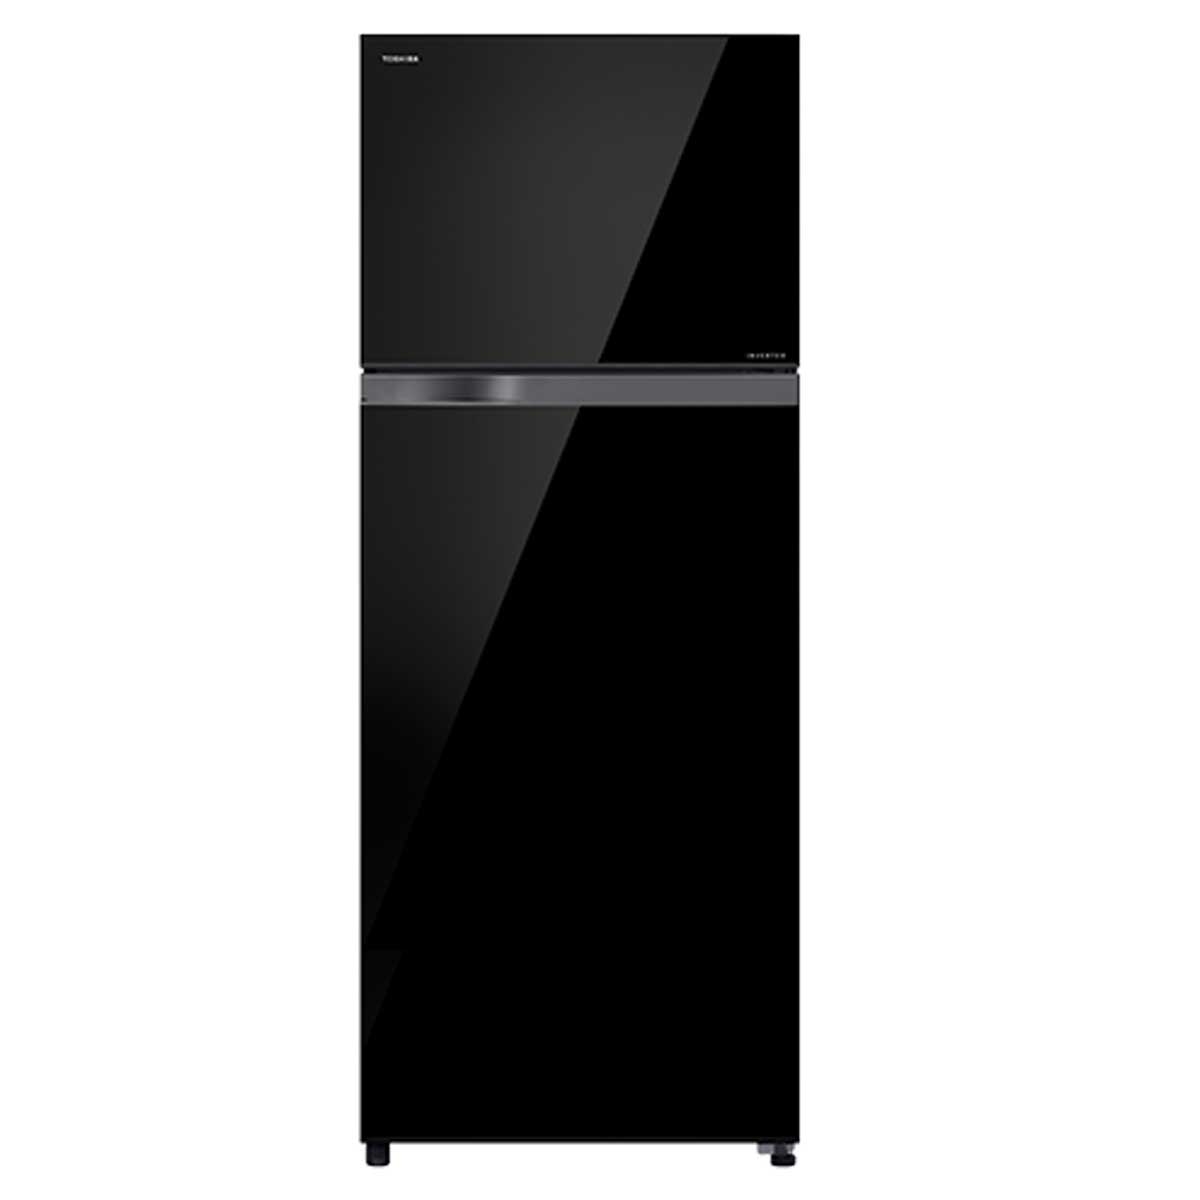 Tủ lạnh Toshiba GR-AG41VPDZXK